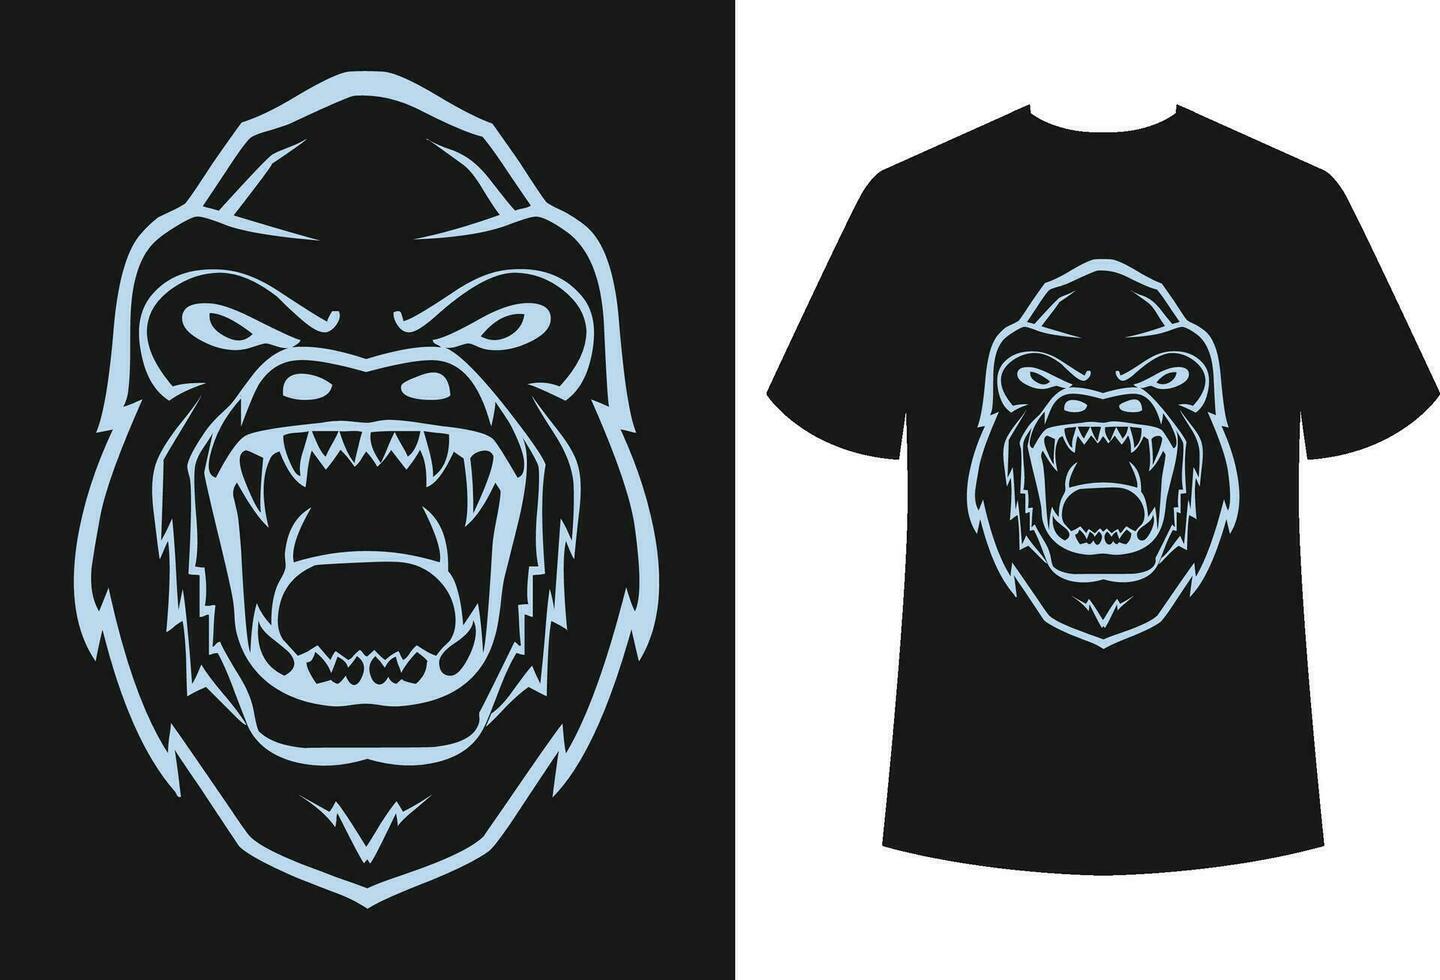 scimmia e gorilla maglietta design vettore